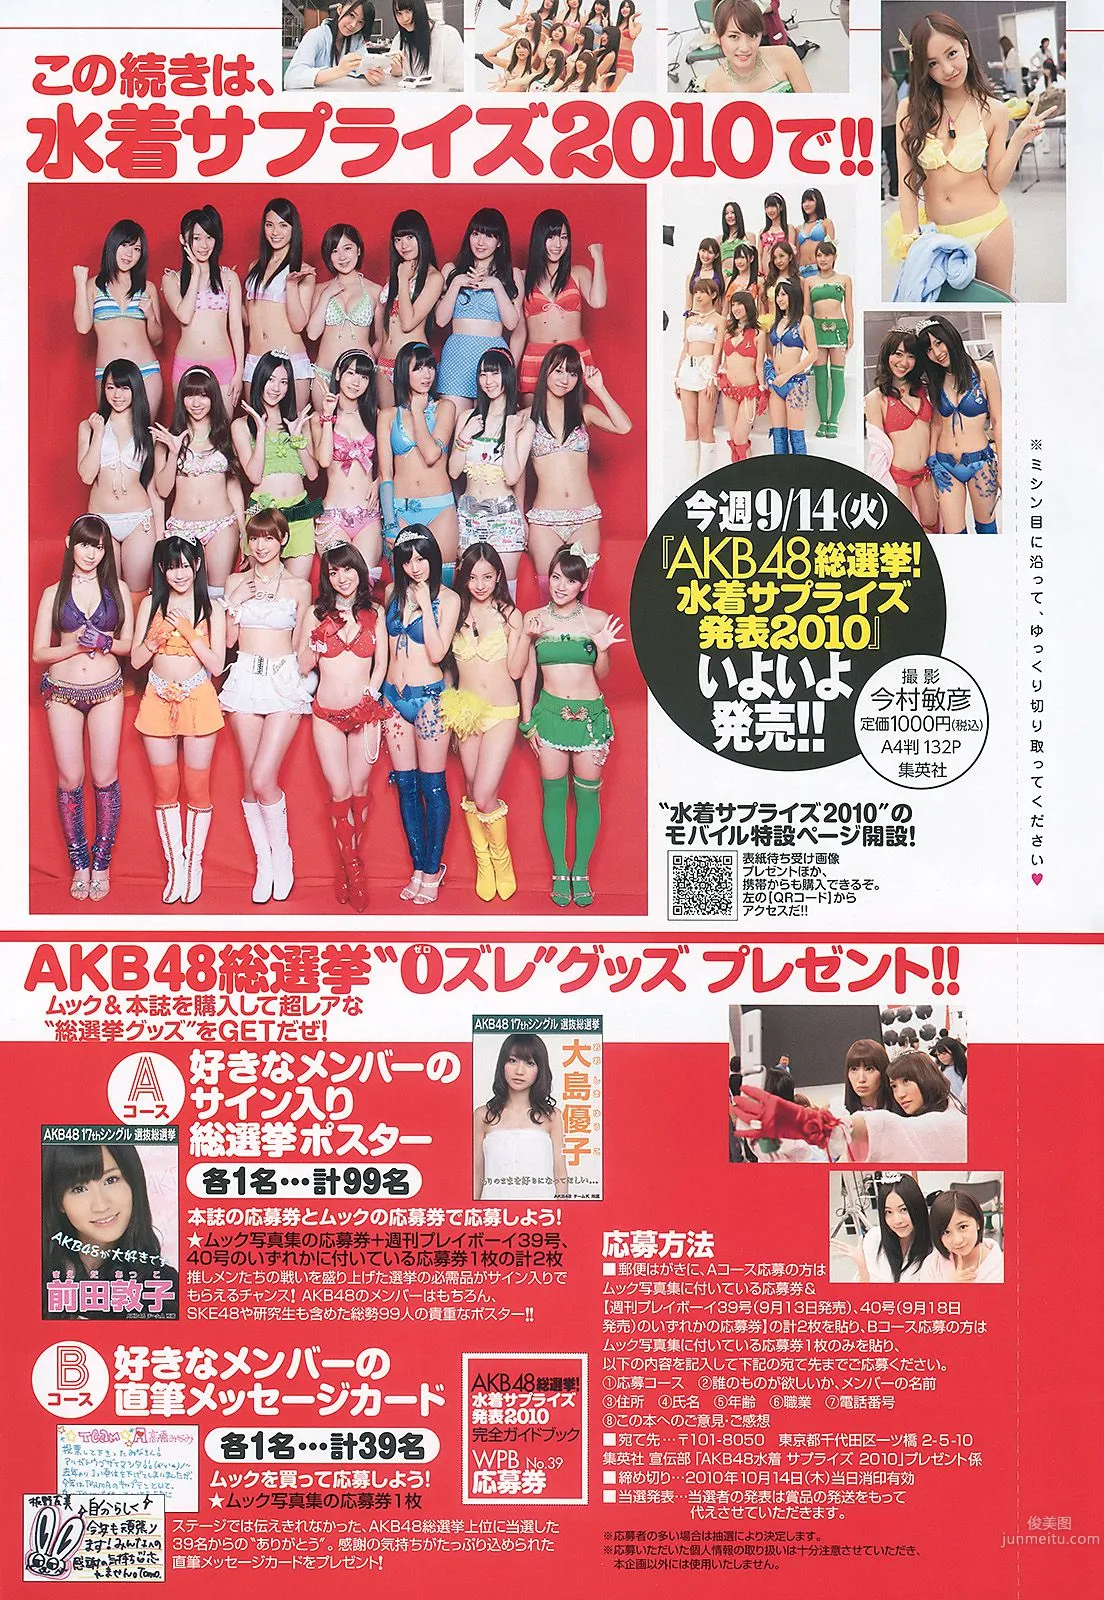 AKB48 次原かな 原幹恵 三原勇希 倉科カナ [Weekly Playboy] 2010年No.39 写真杂志40